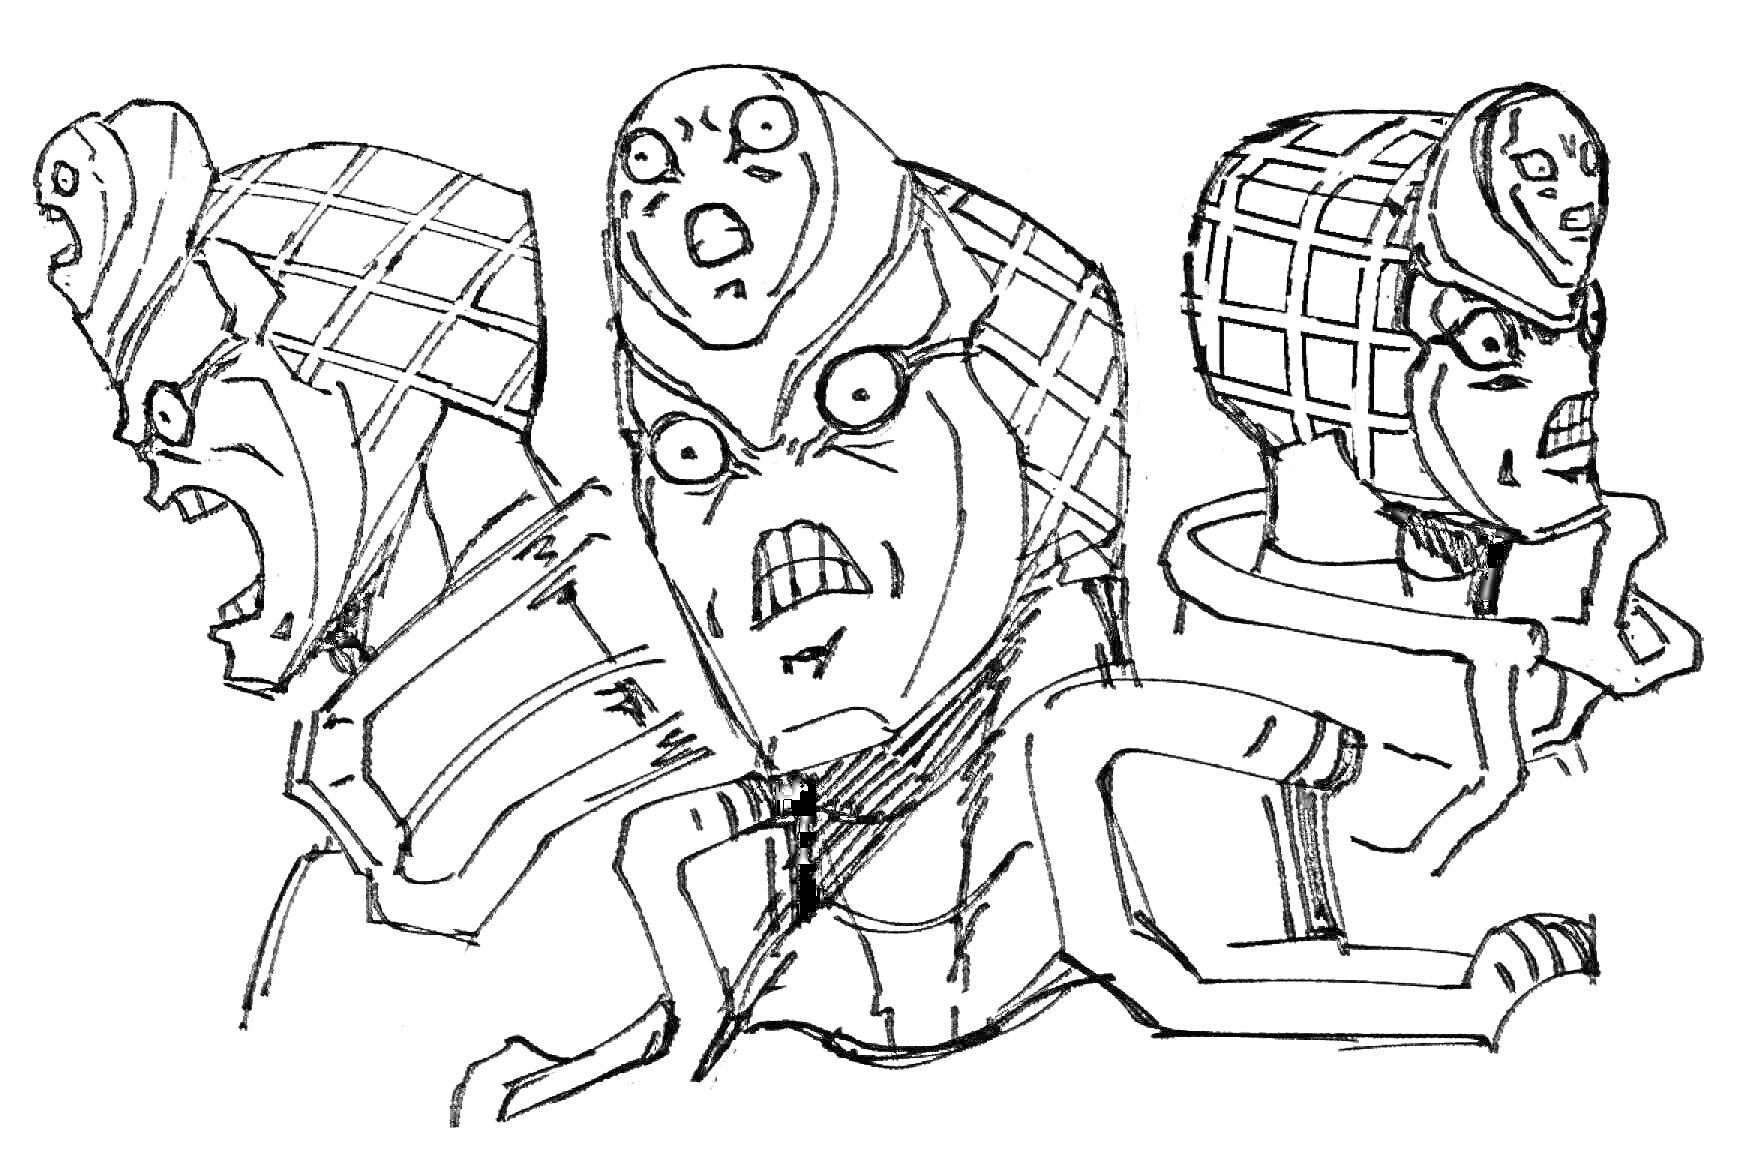 Три выражения лица персонажа с уникальным шлемом, узором на шлеме и тремя различными гримасами